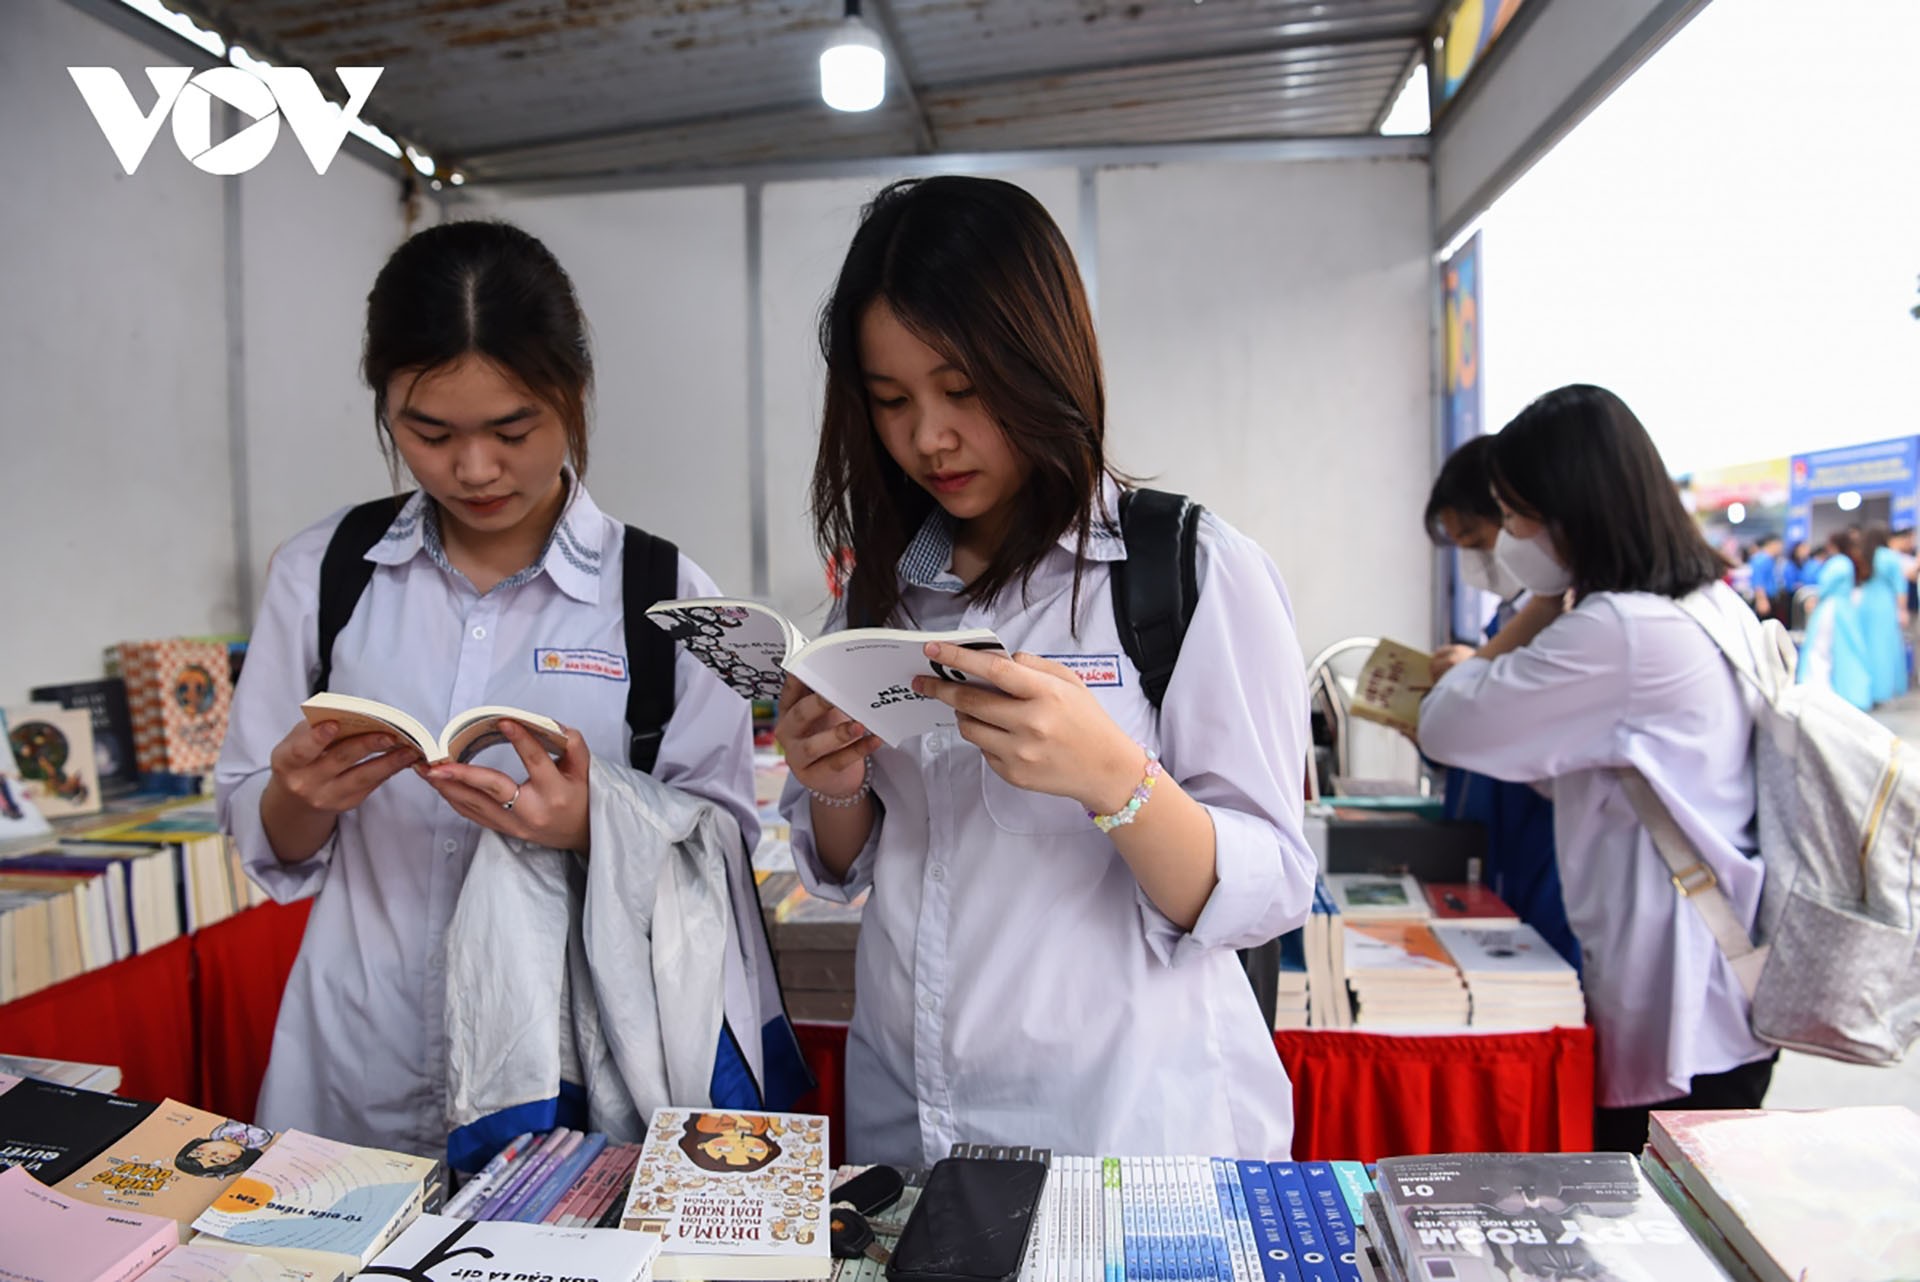 Tỉnh Bắc Ninh mong muốn khuyến khích và phát triển phong trào đọc sách trong cộng đồng thông qua sự kiện. (Nguồn: VOV)